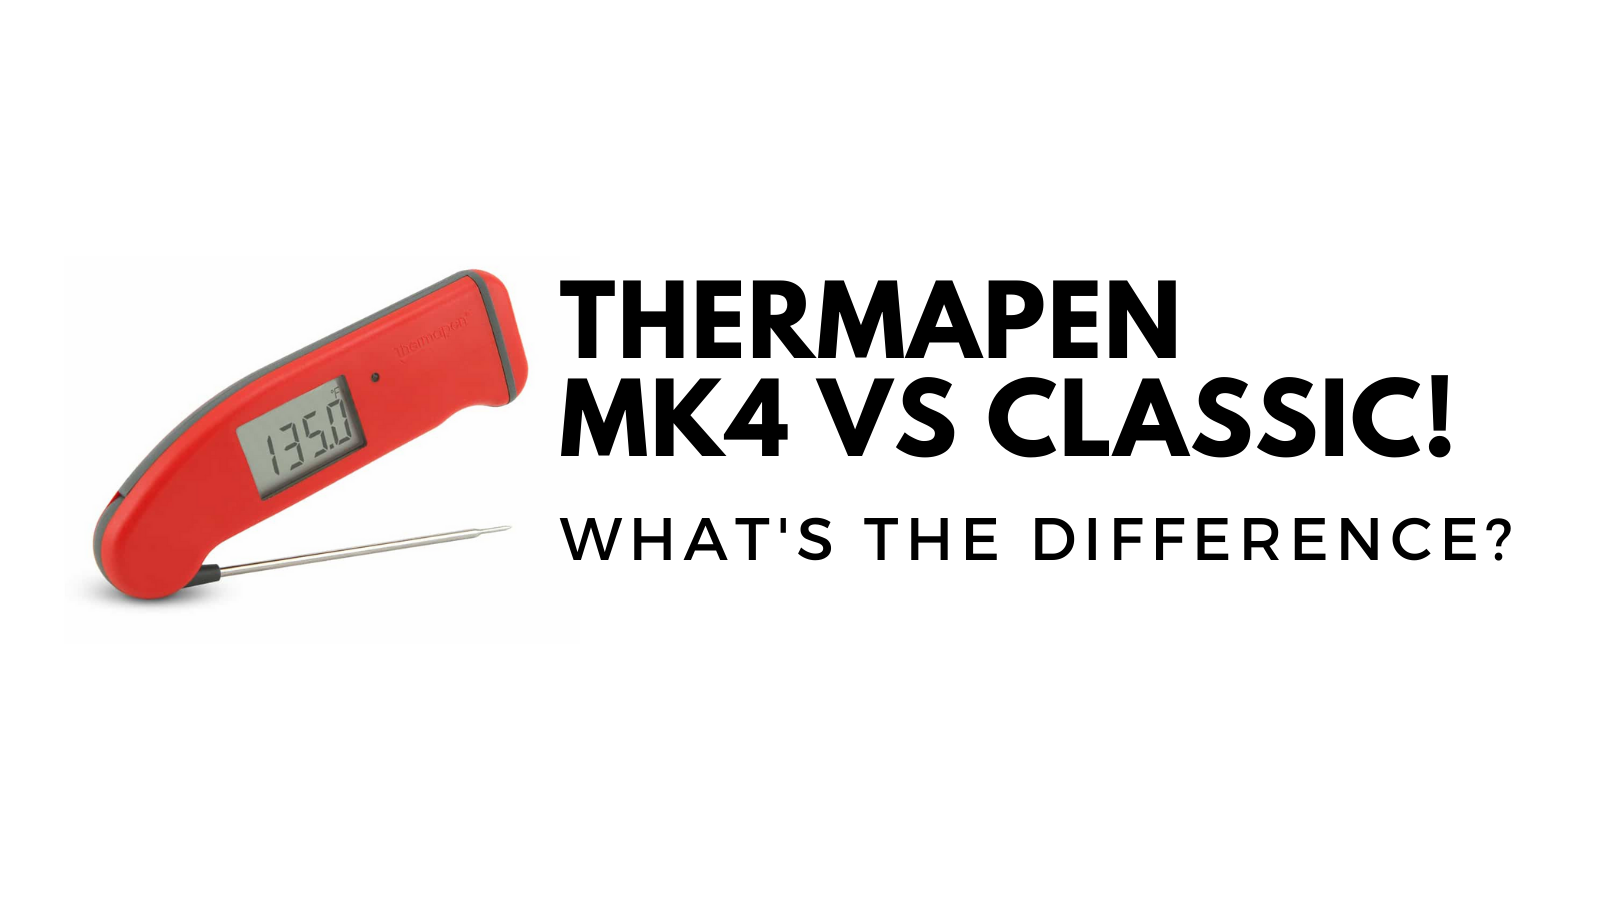 compare thermapen mk4 to classic